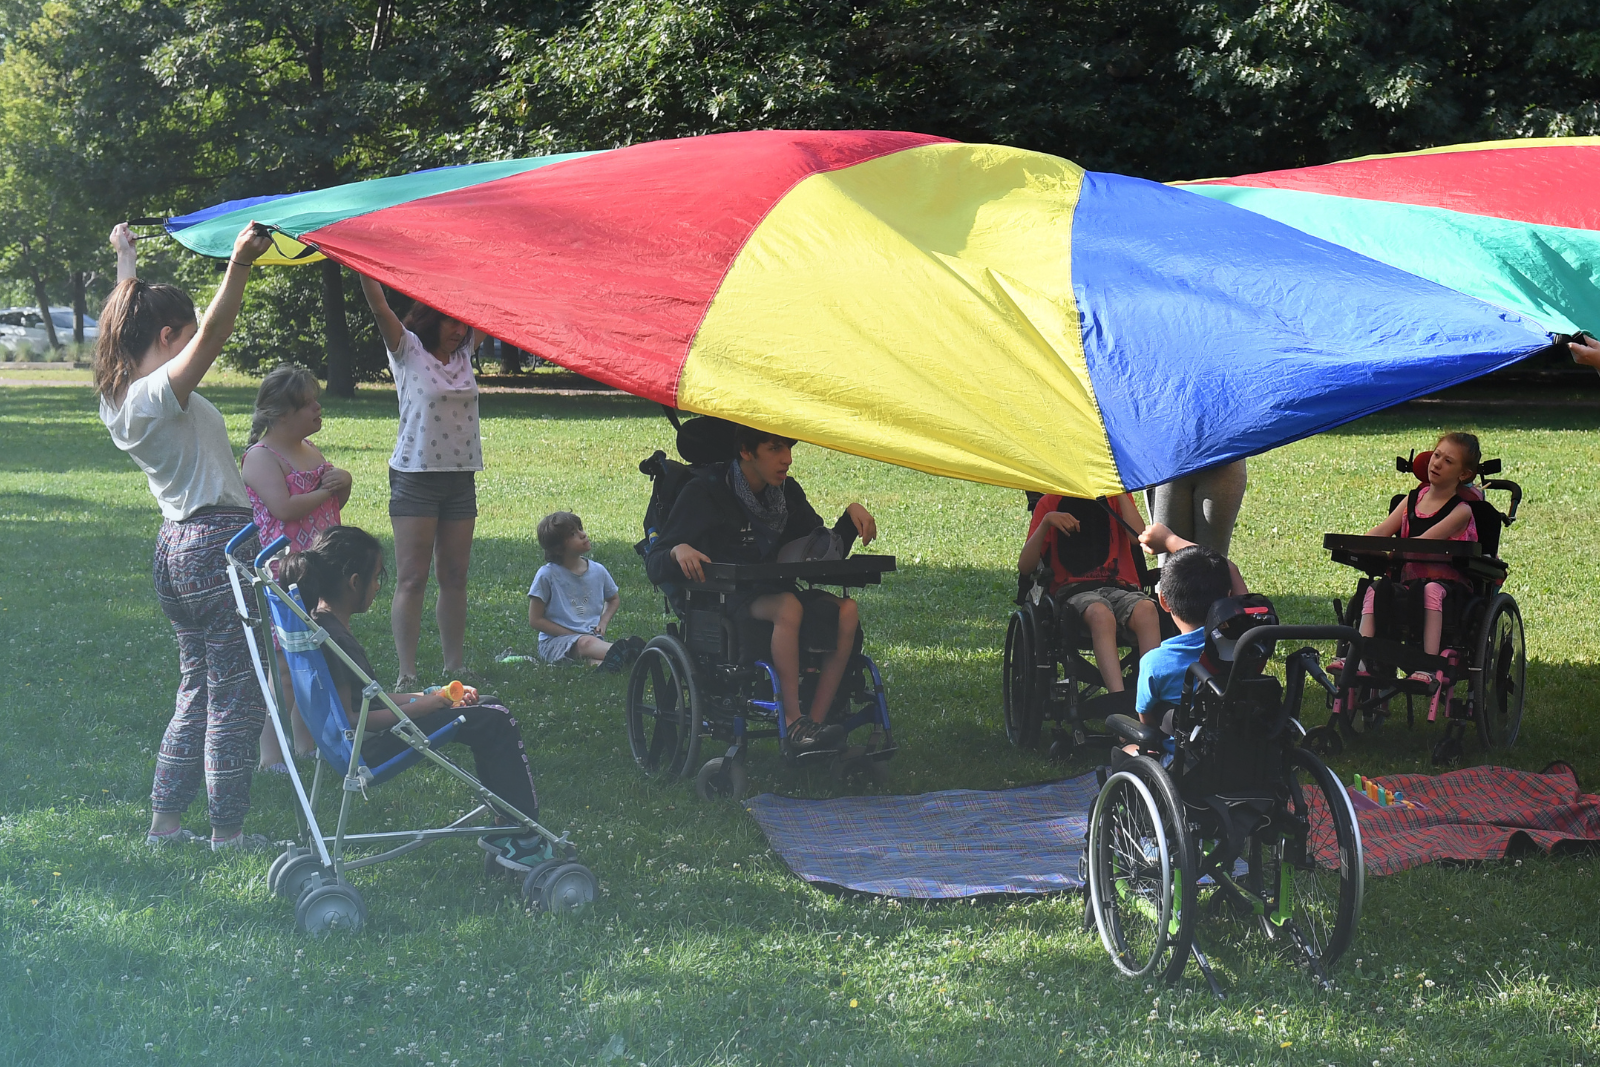 Des enfants ayant une limitation fonctionnelle s'amusent dans un parc avec un grand parachute multicolore.